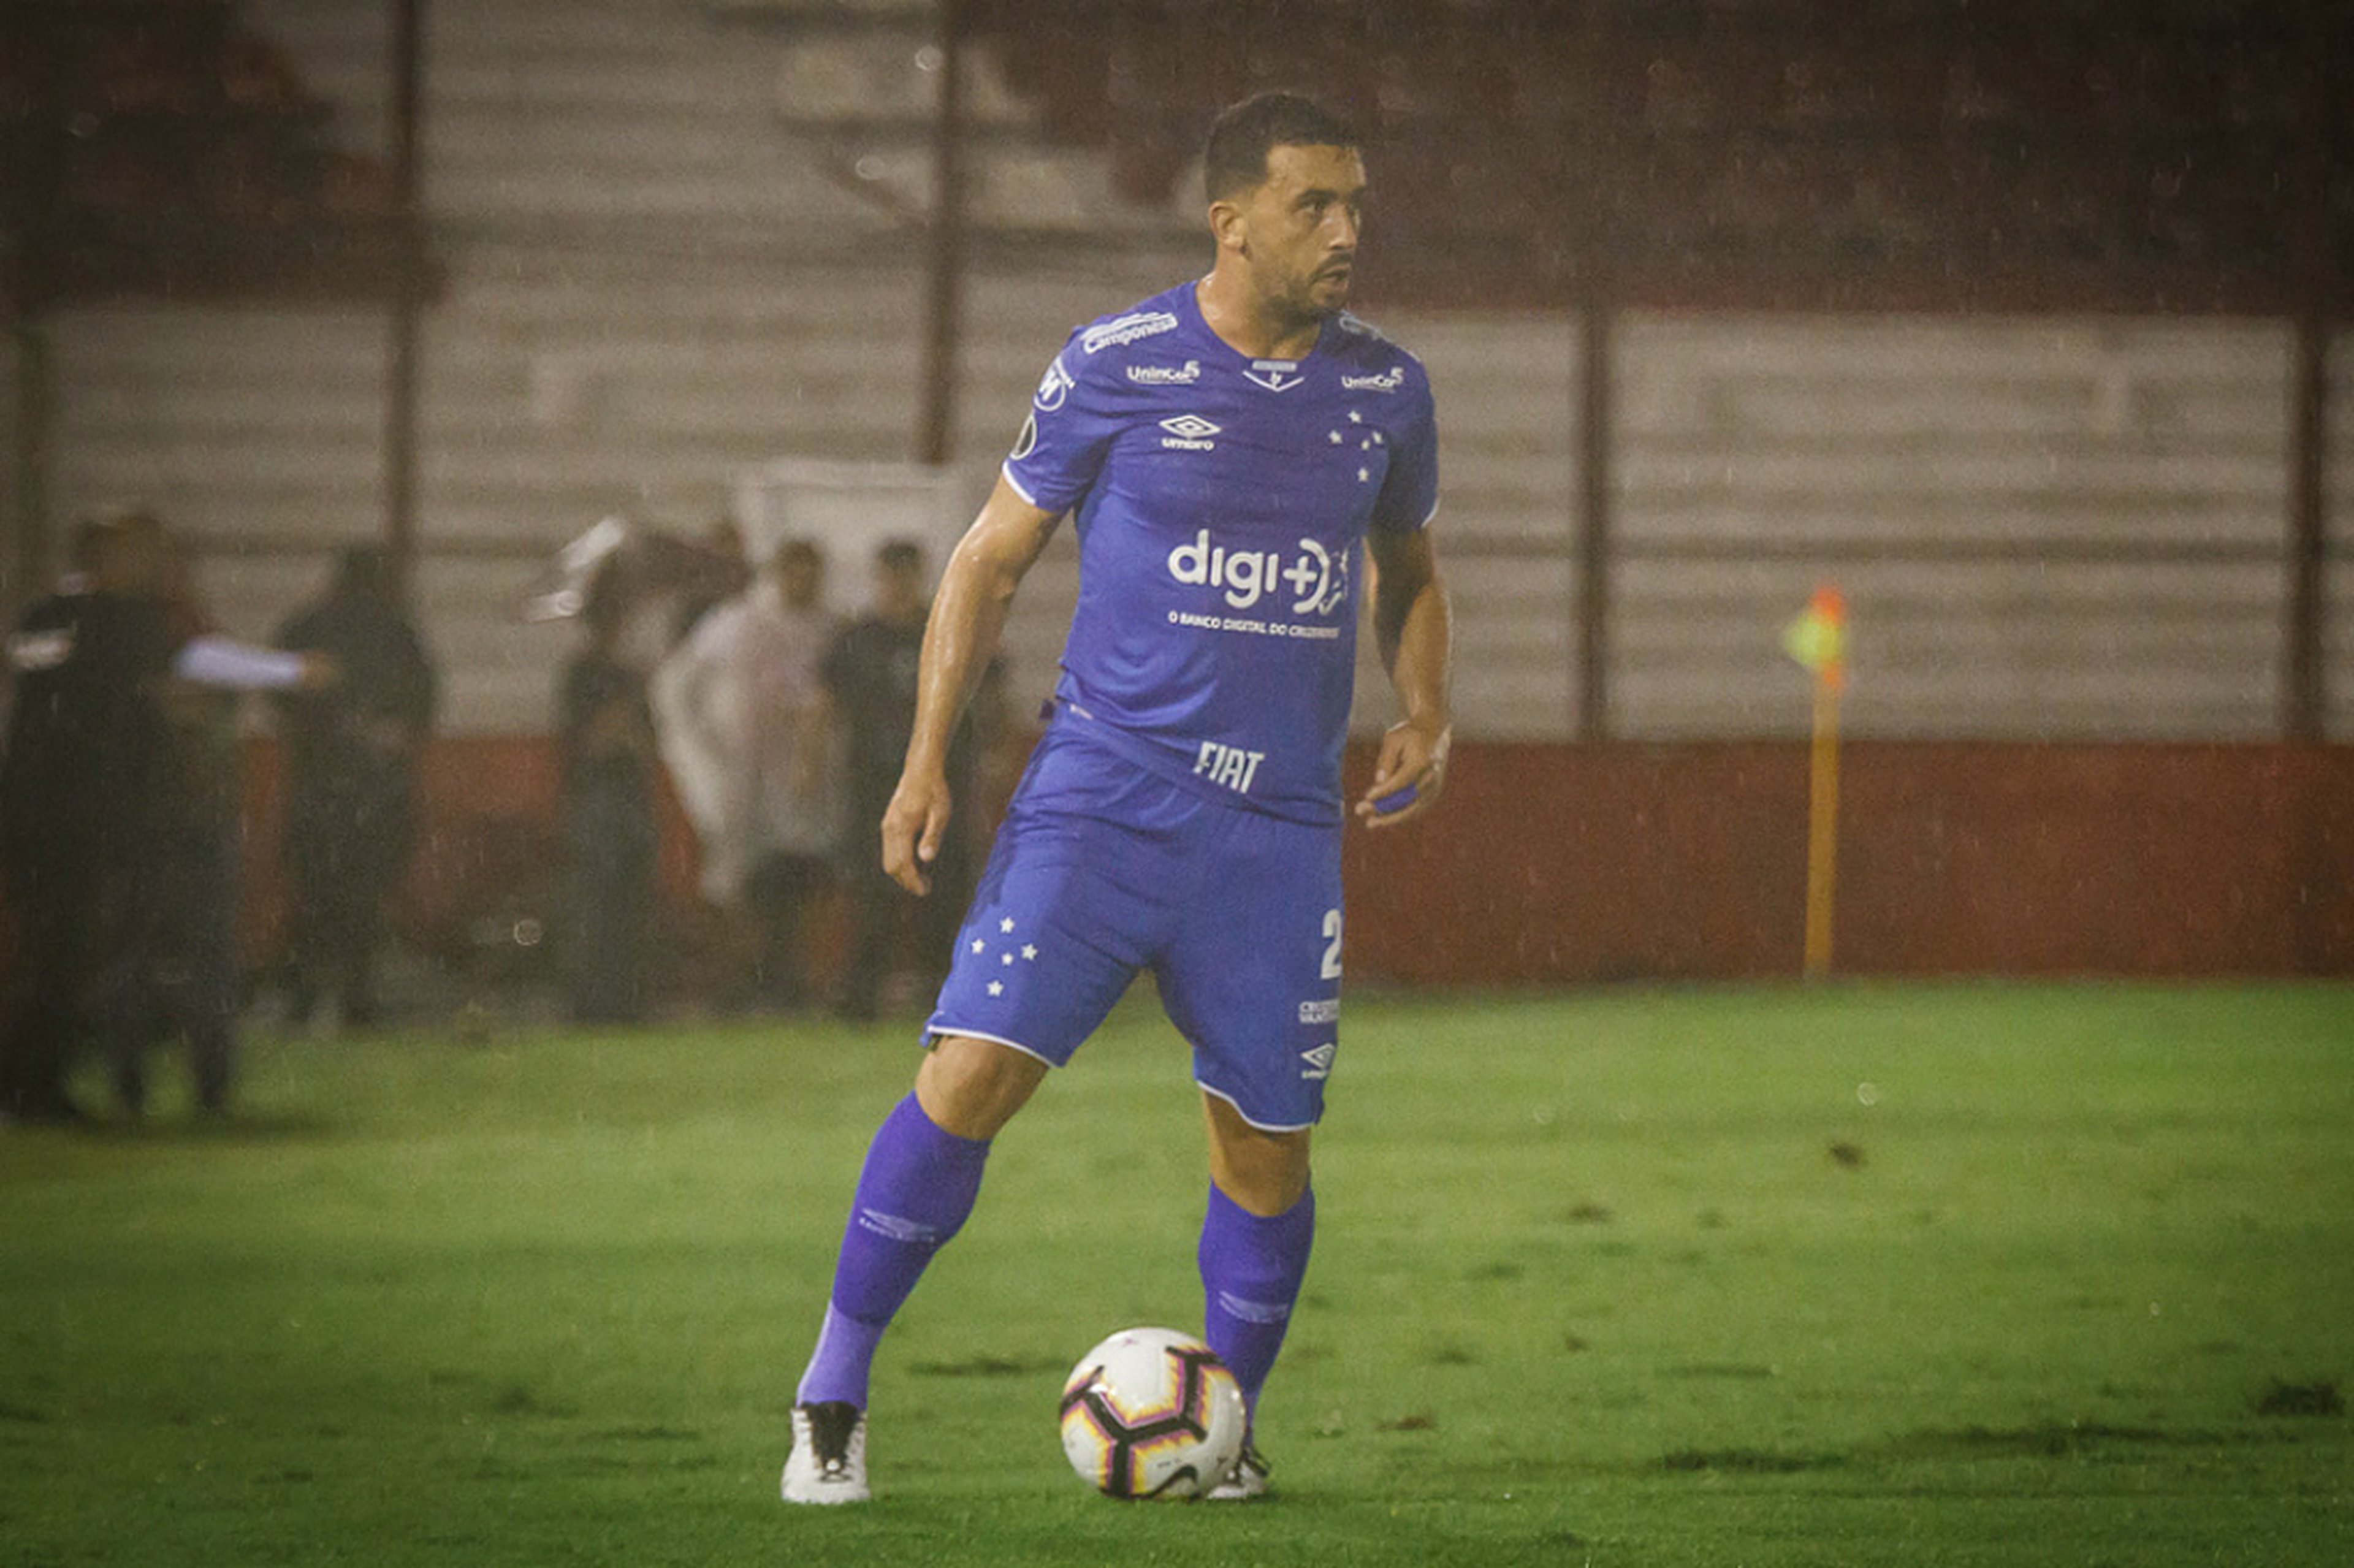 Vinnícius Silva/Cruzeiro